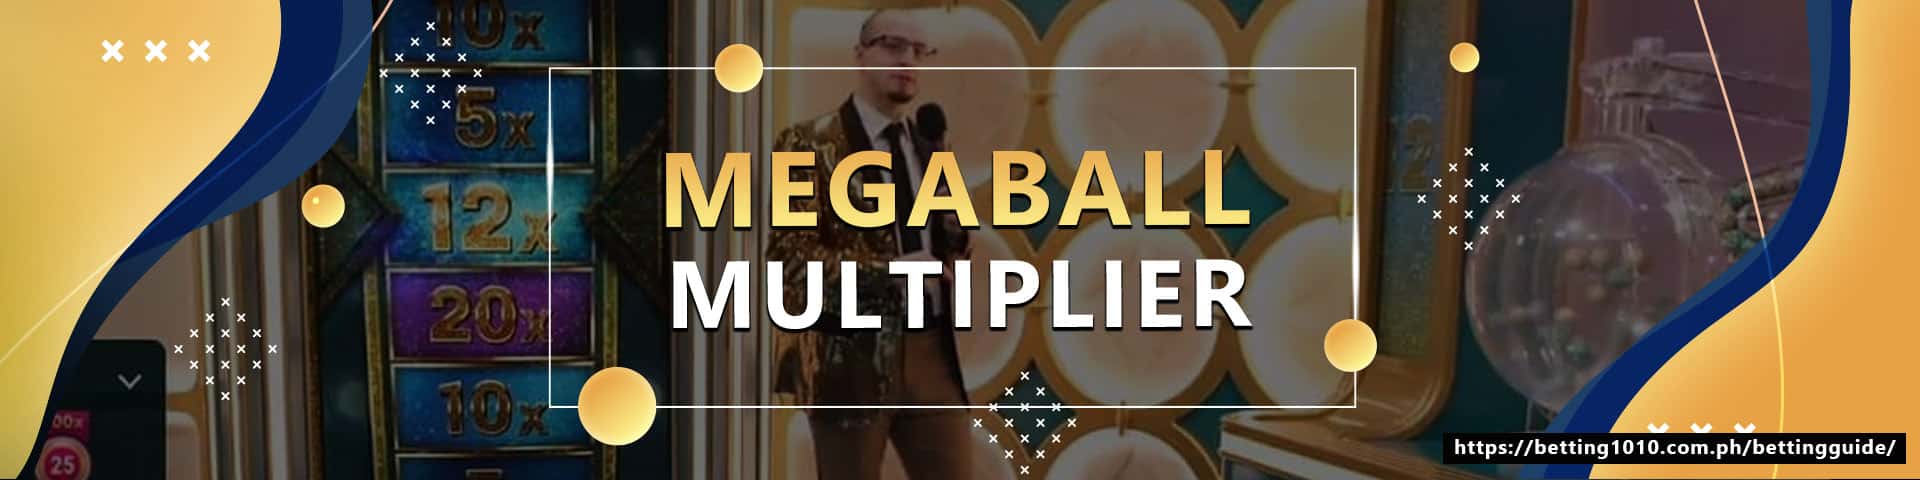 Megaball multiplier